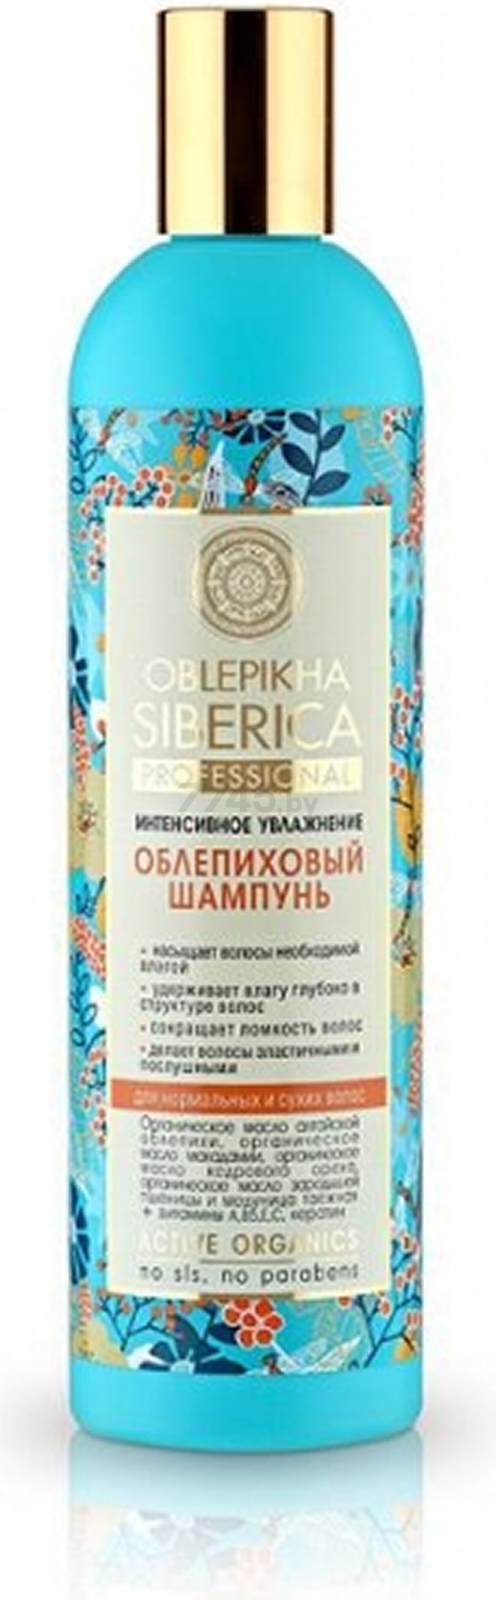 Шампунь NATURA SIBERICA Oblepikha Siberica Professional Облепиховый для нормальных и сухих волос 400 мл (4607174432338)